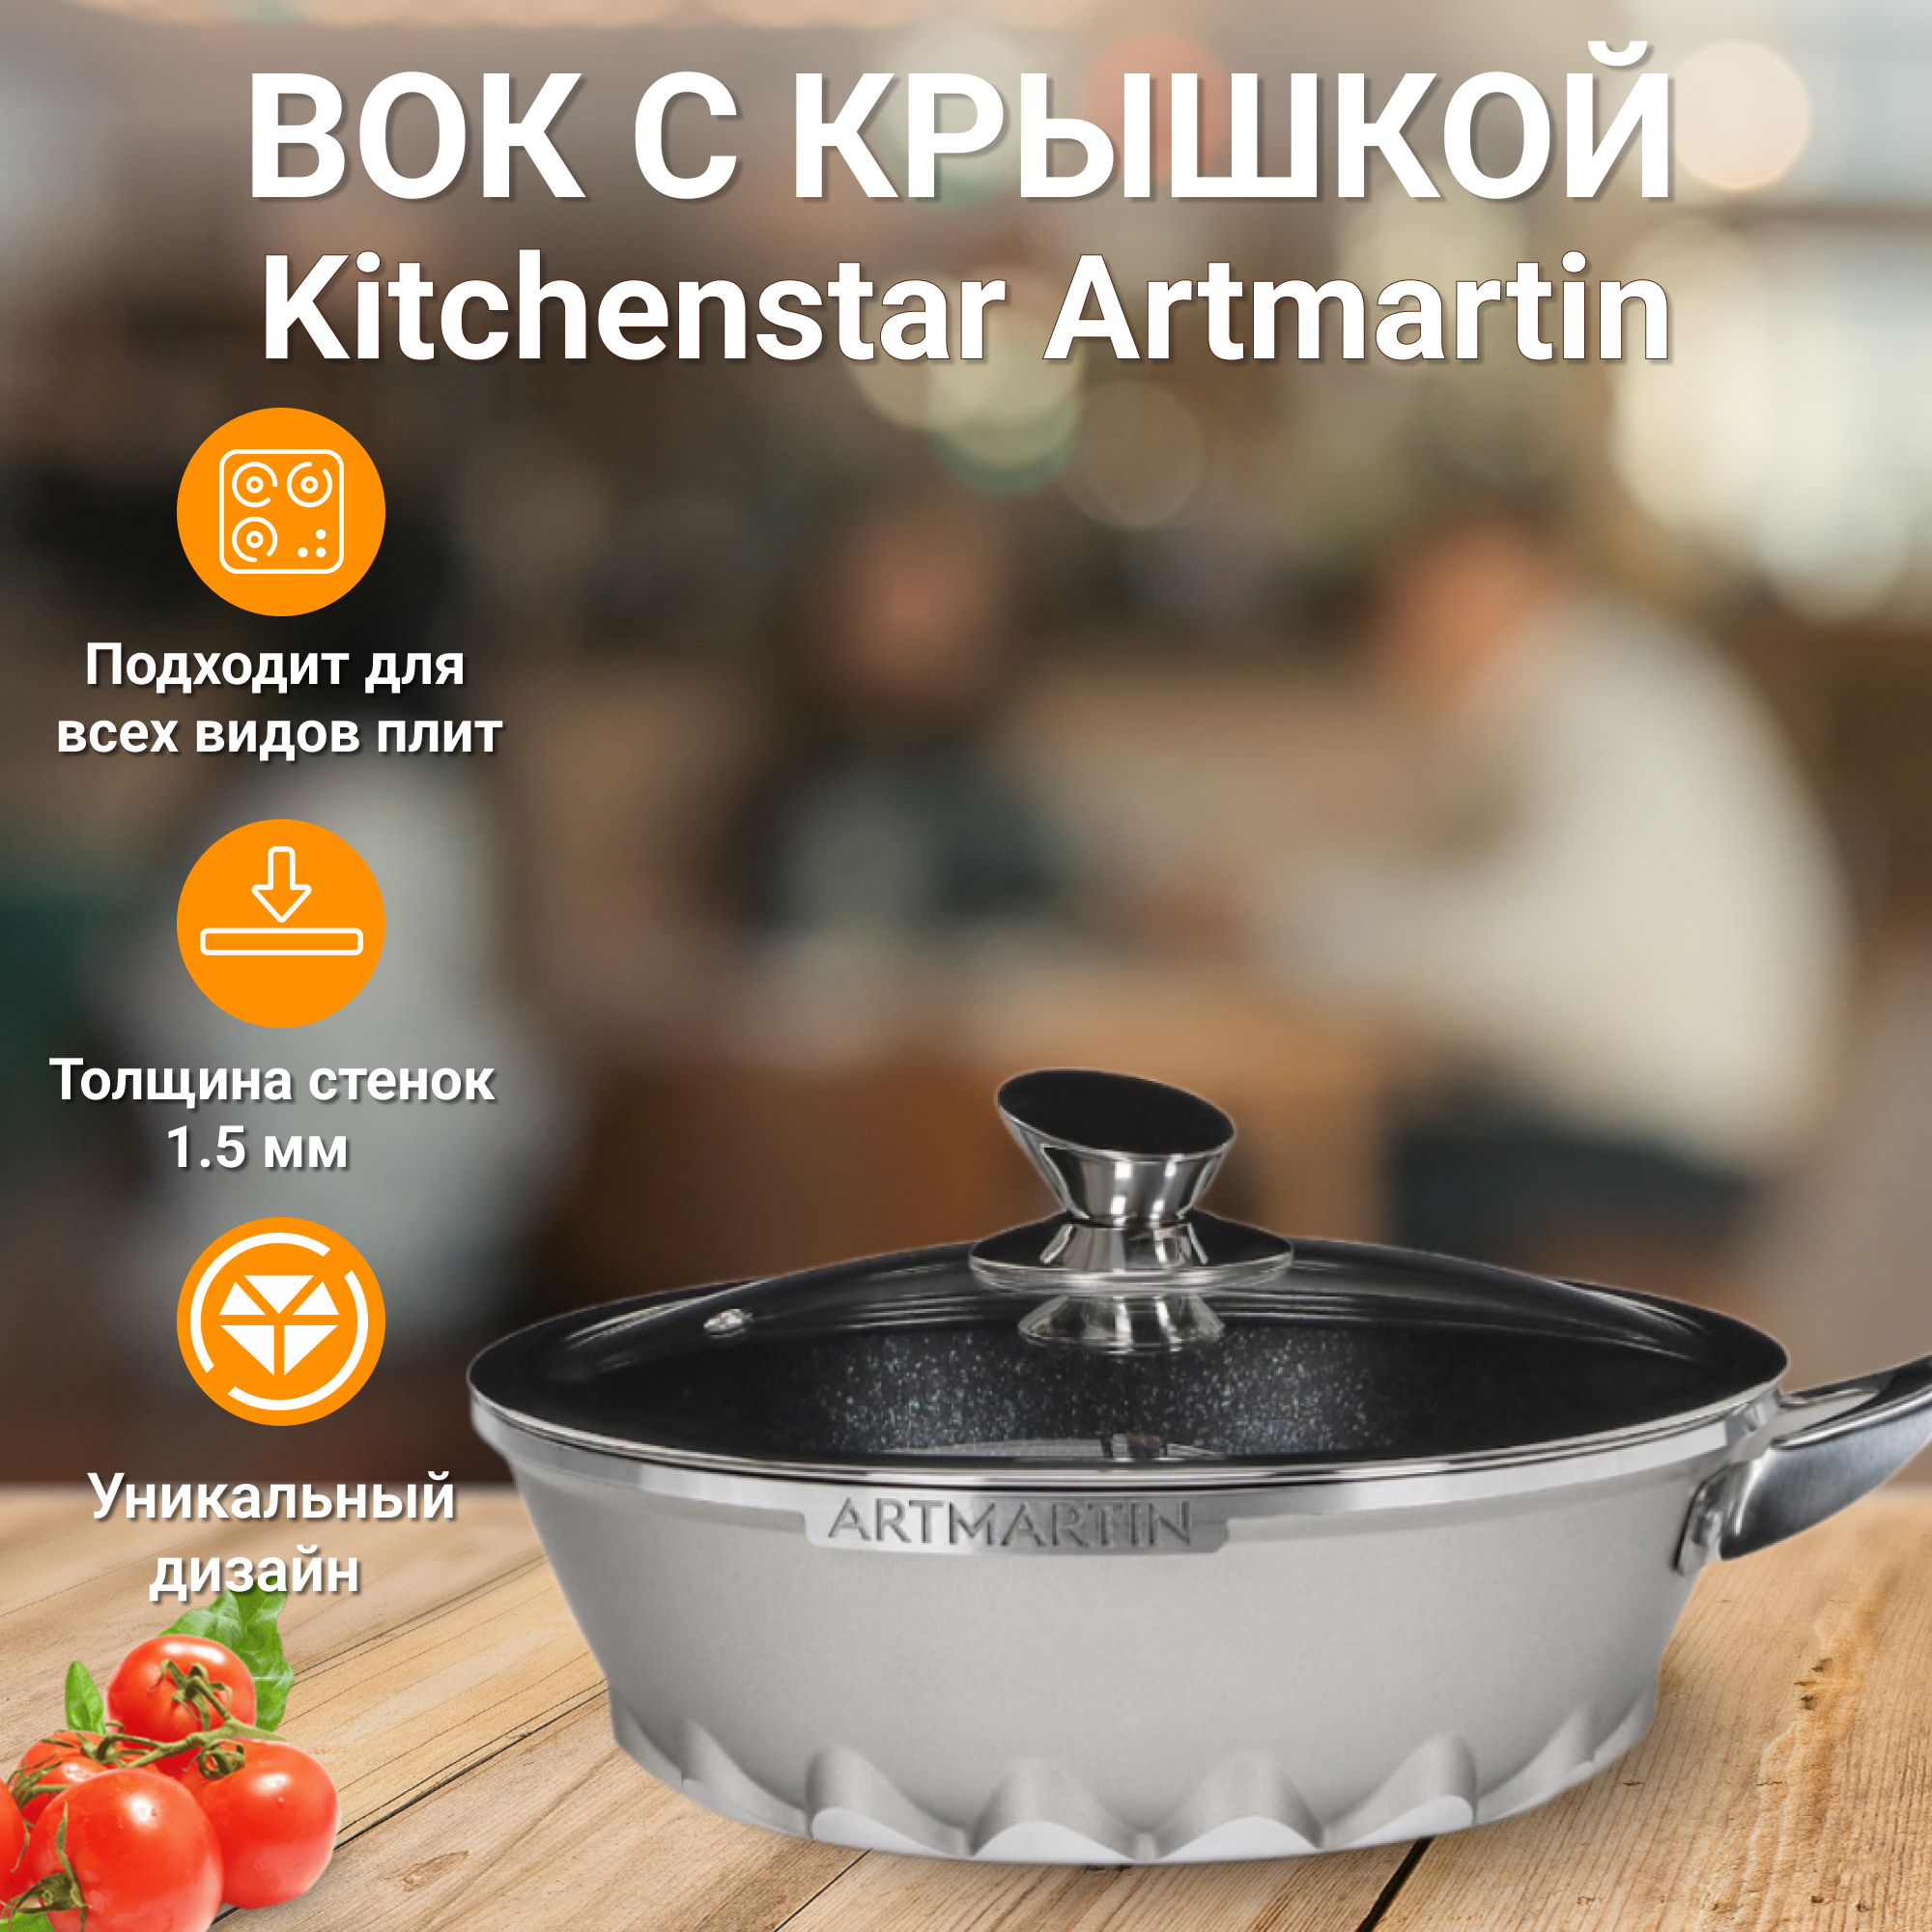 Вок с крышкой Kitchen star Artmartin 24 см, цвет серый - фото 2